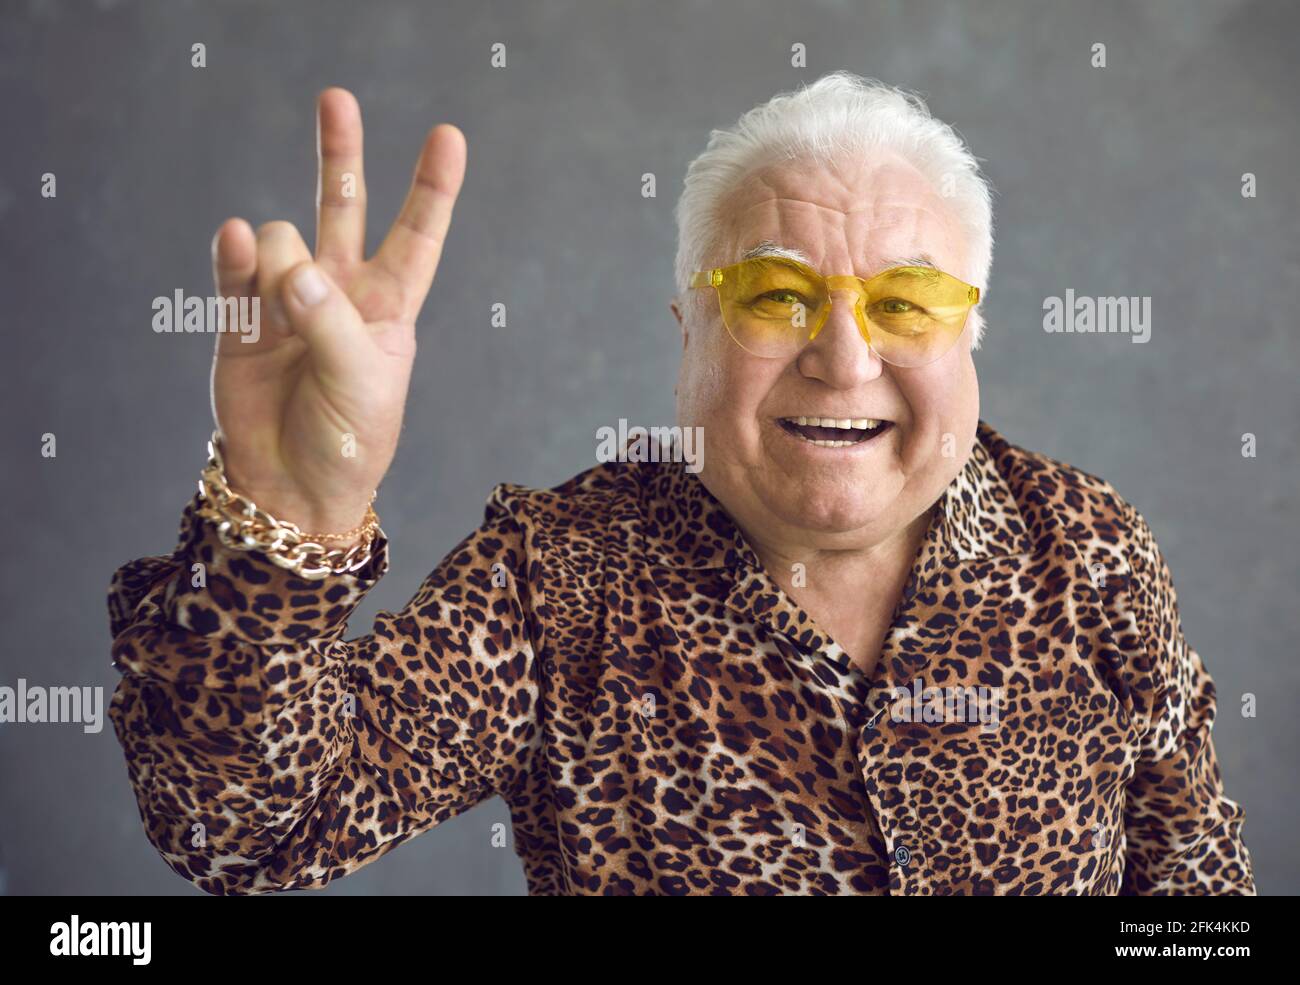 Cheerful stylish glamorous senior man showing v-sign peace symbol on gray background. Stock Photo